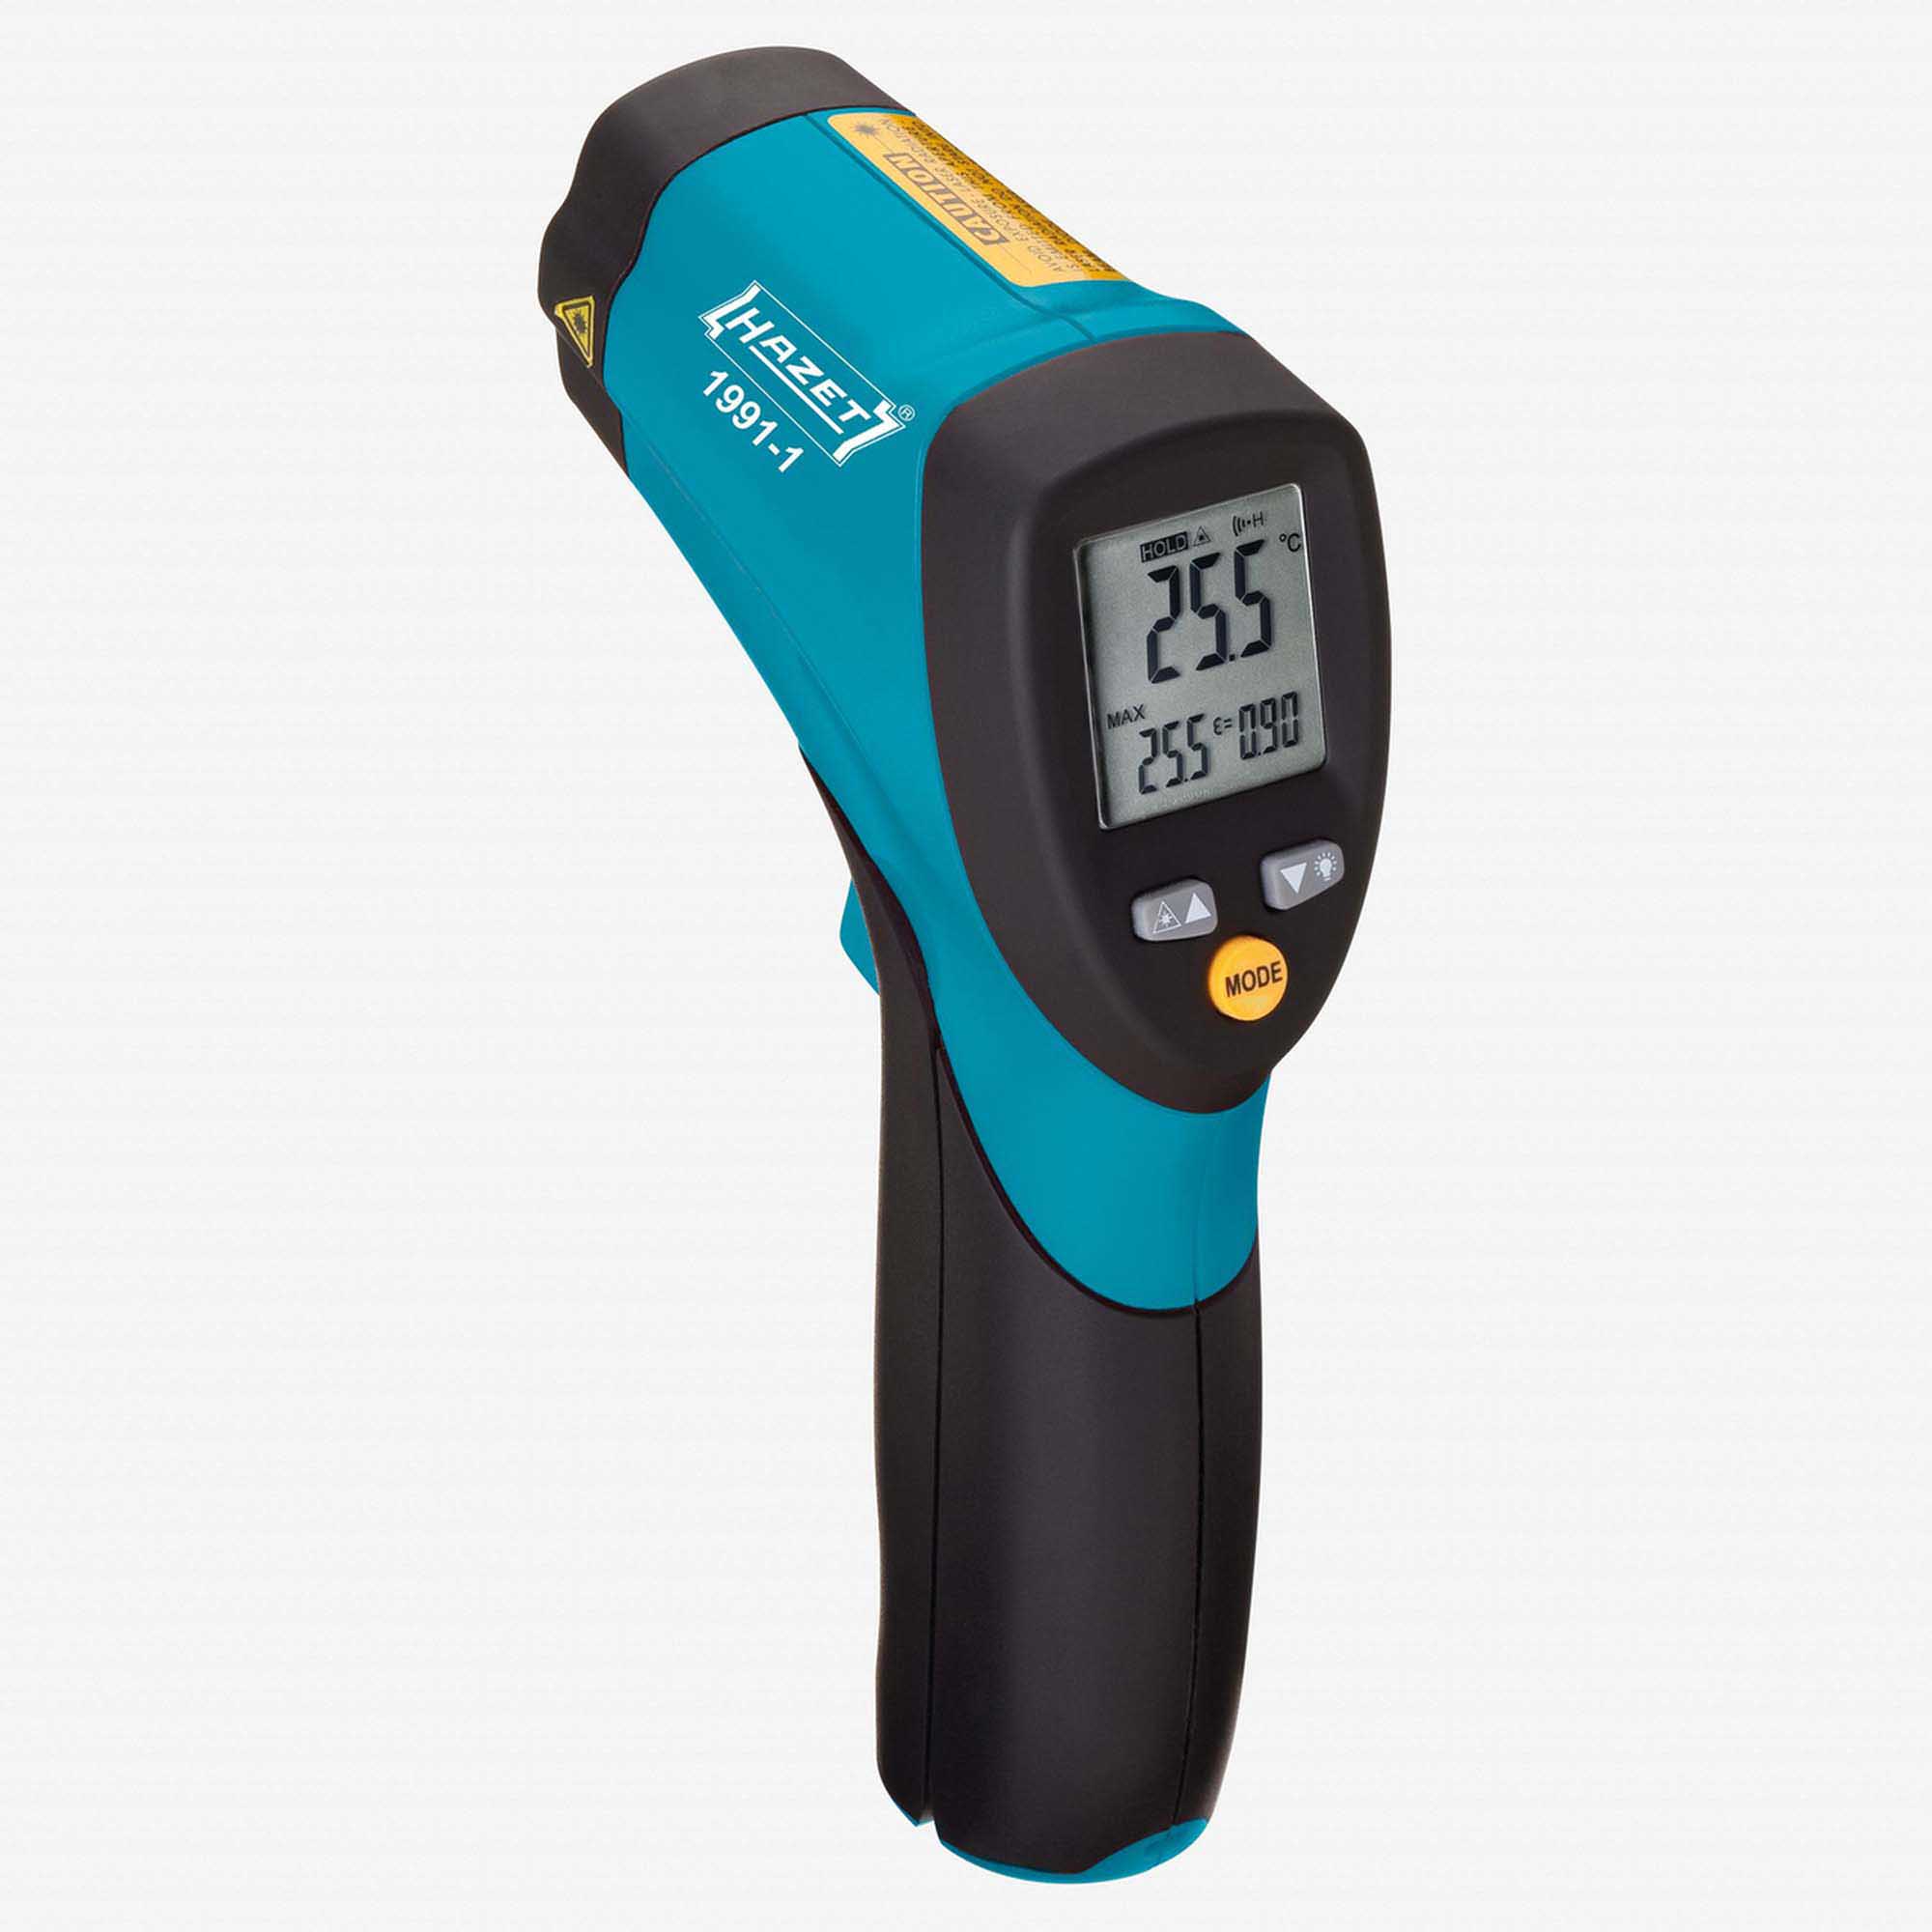 German Hazet remote temperature measuring device